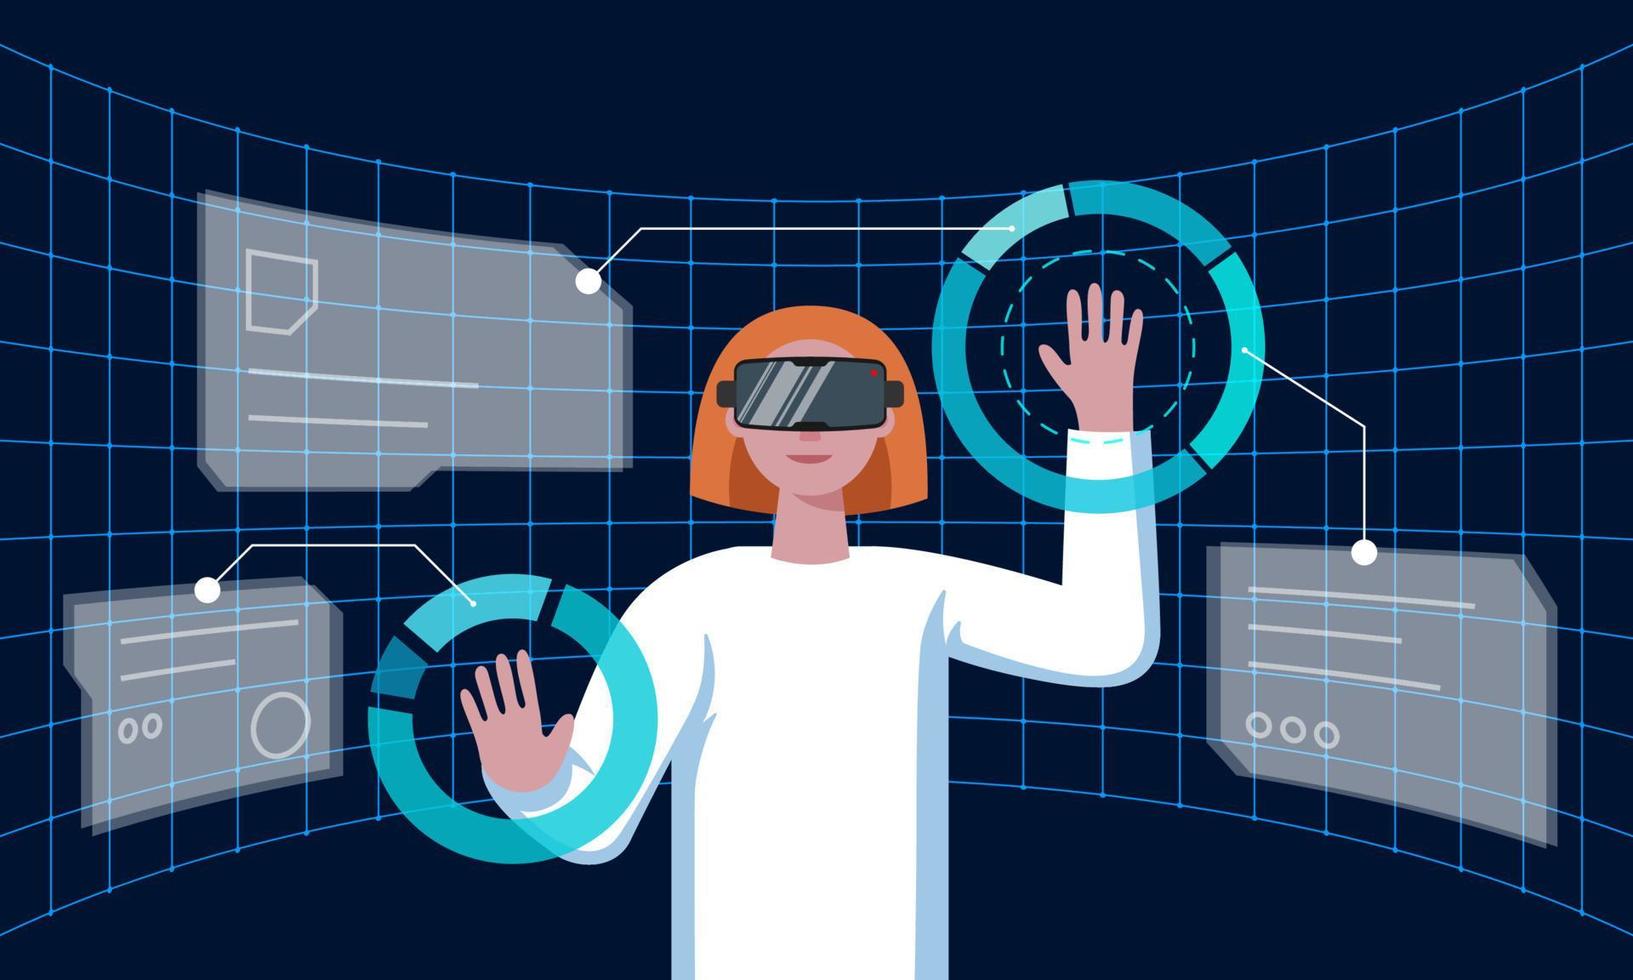 femme avec casque vr se connectant à la réalité virtuelle métaverse de la technologie futuriste et entourée d'une future interface 3d hologramme big data. femme scientifique travaillant avec un casque méta cyber-espace. eps vecteur